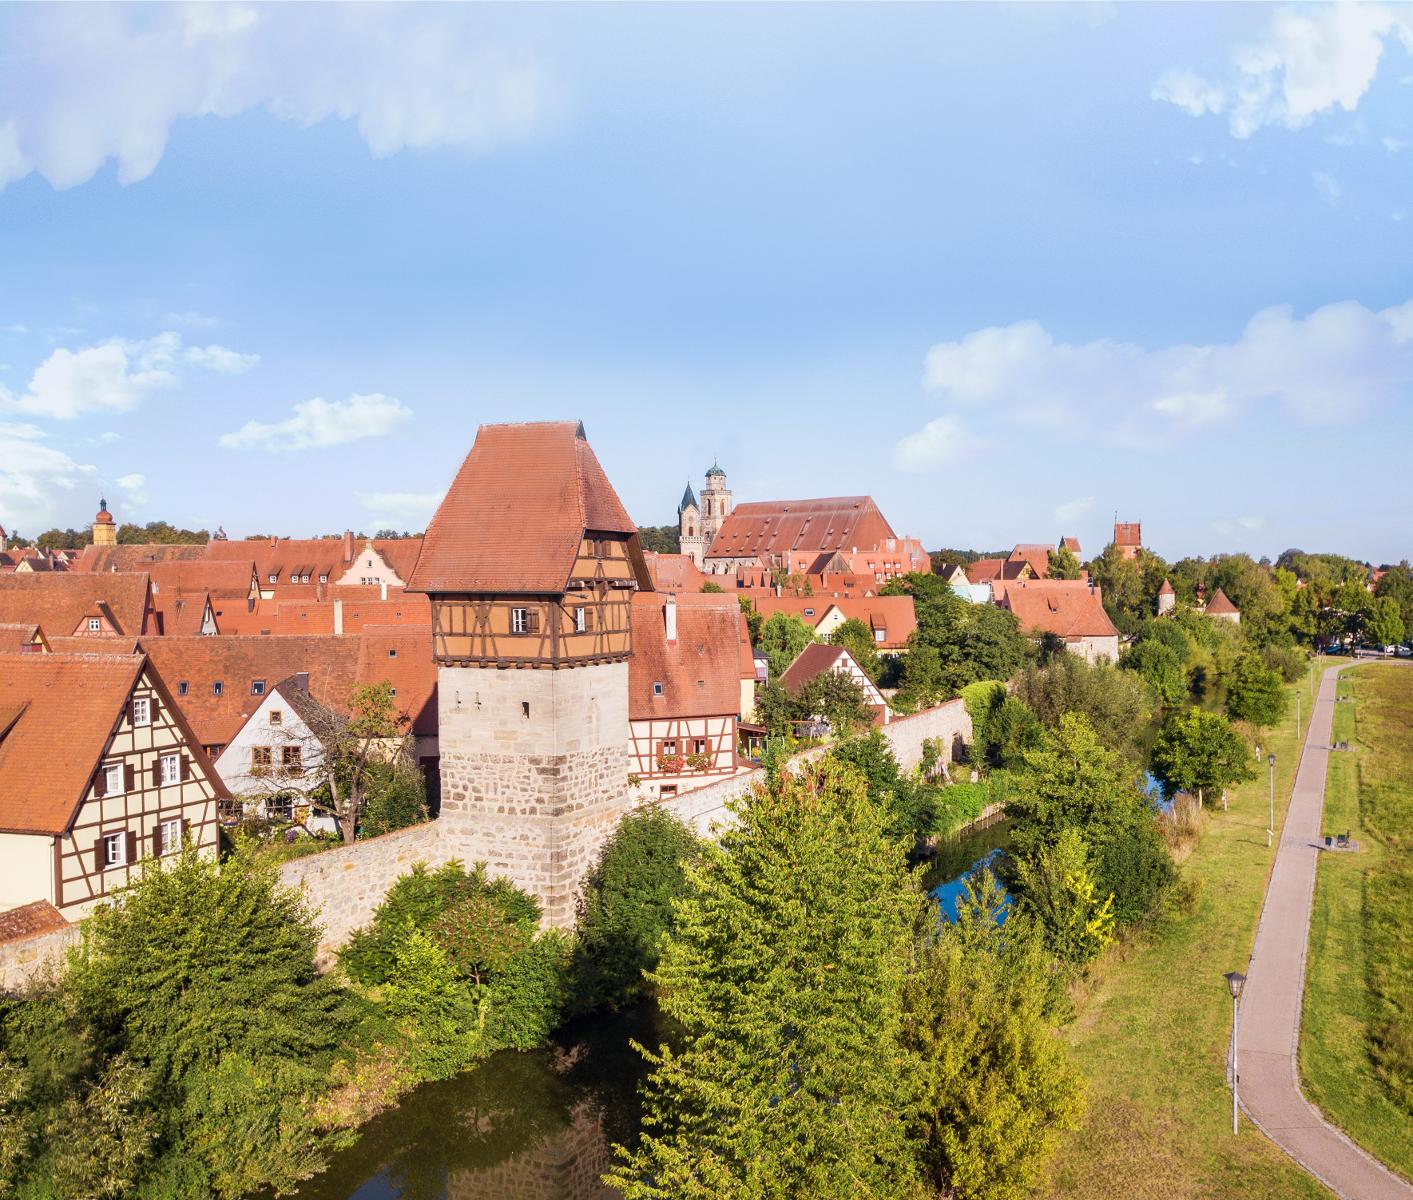 Der Dinkelsbühler Stadtpark zieht sich rund um die vollständig erhaltene Stadtmauer, die mit ihren Toren und Türmen die mittelalterliche Altstadt umschließt.